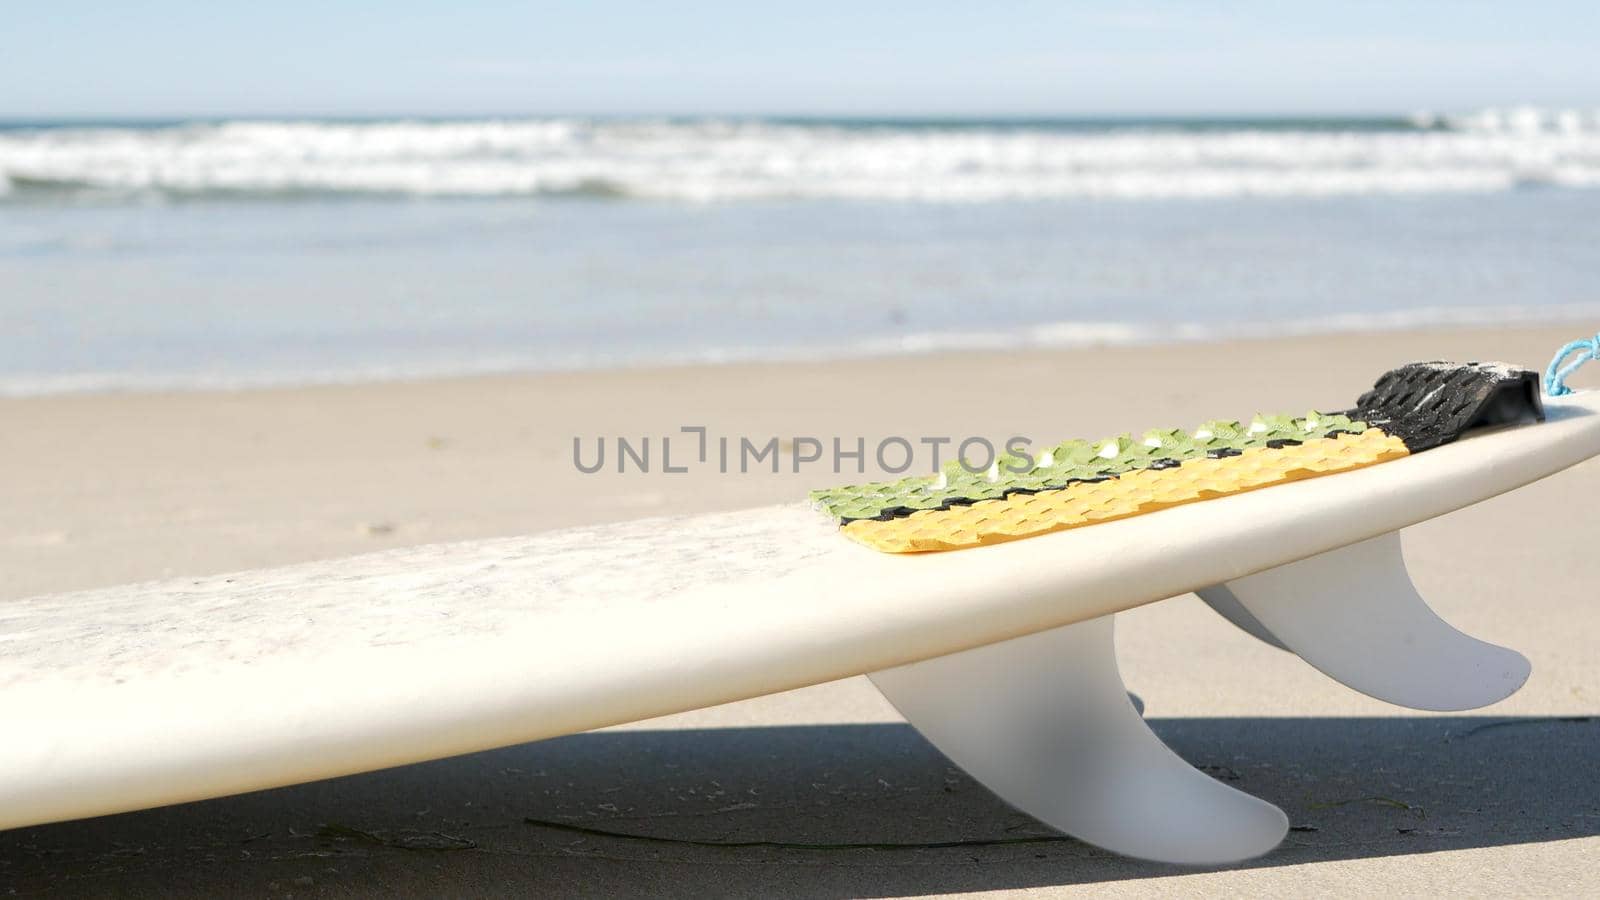 Surfboard for surfing lying on beach sand, California coast, USA. Ocean waves. by DogoraSun